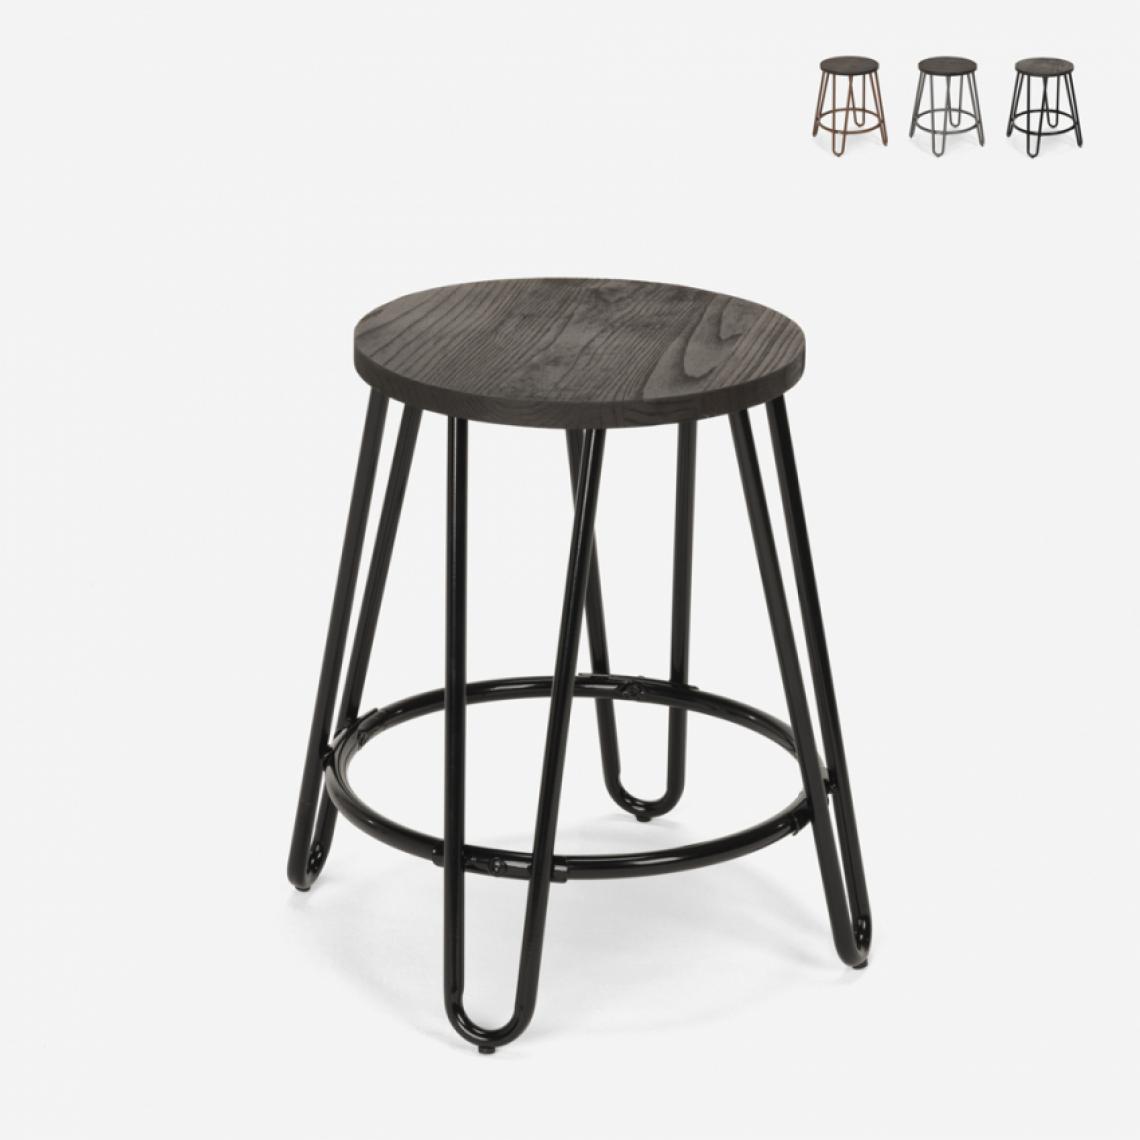 Ahd Amazing Home Design - Tabouret en métal design industriel pour bars restaurants cuisines Carbon One, Couleur: Noir - Tabourets